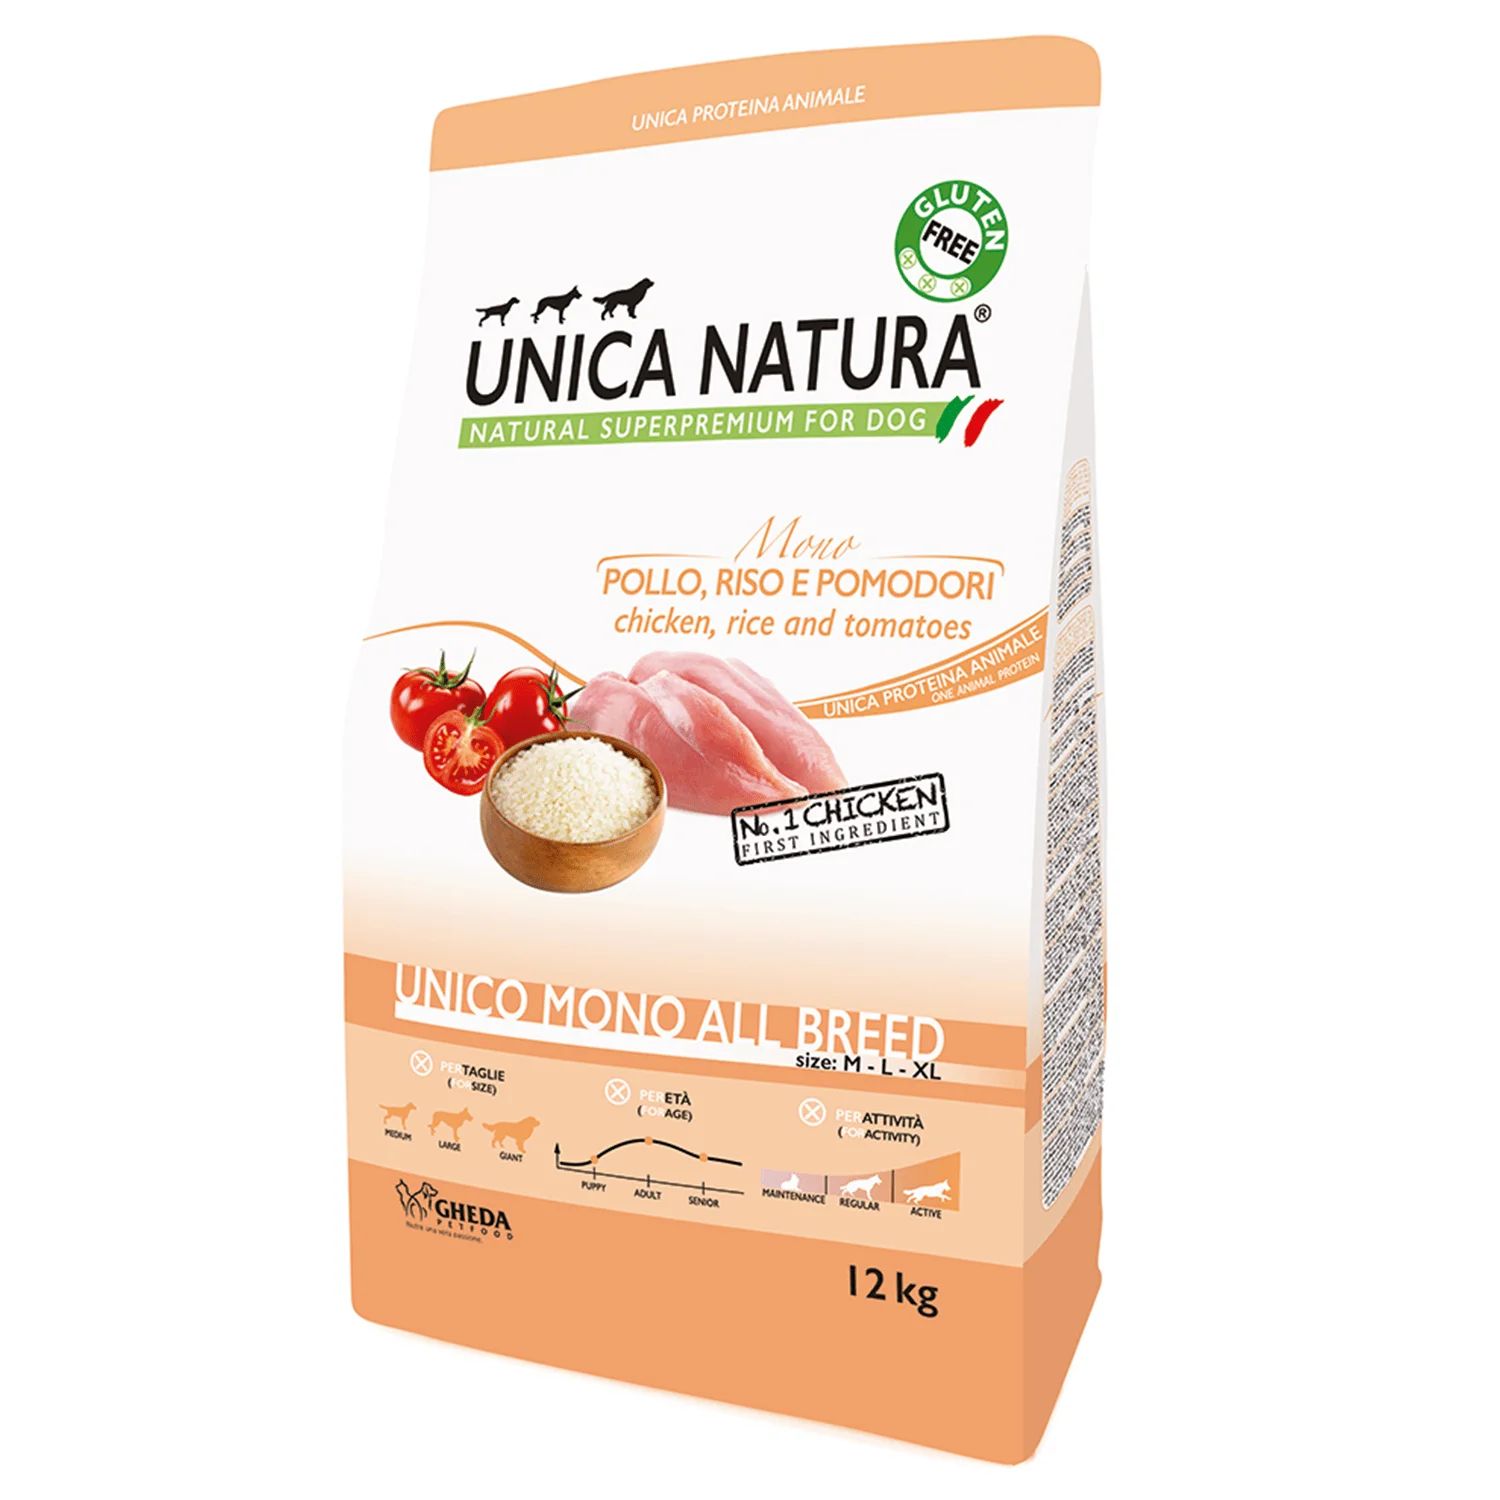 Unica Natura Unico Mono Chicken All Breed monobiałkowa karma z kurczakiem dla psów średnich